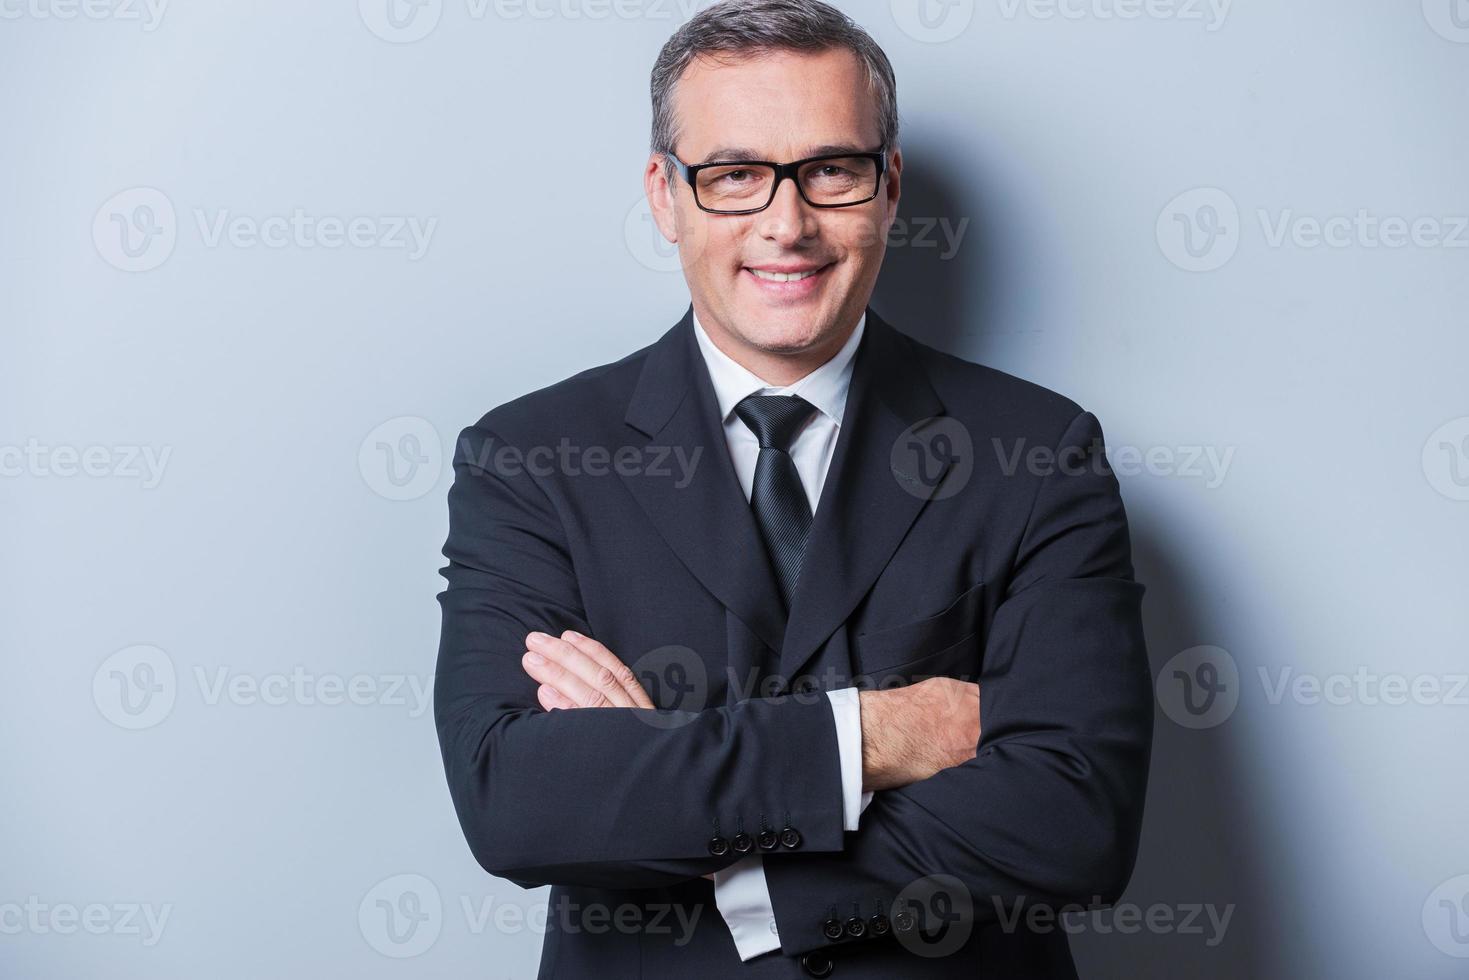 confiado y exitoso. retrato de un hombre maduro confiado en ropa formal y anteojos mirando a la cámara y sonriendo mientras se enfrenta a un fondo gris foto